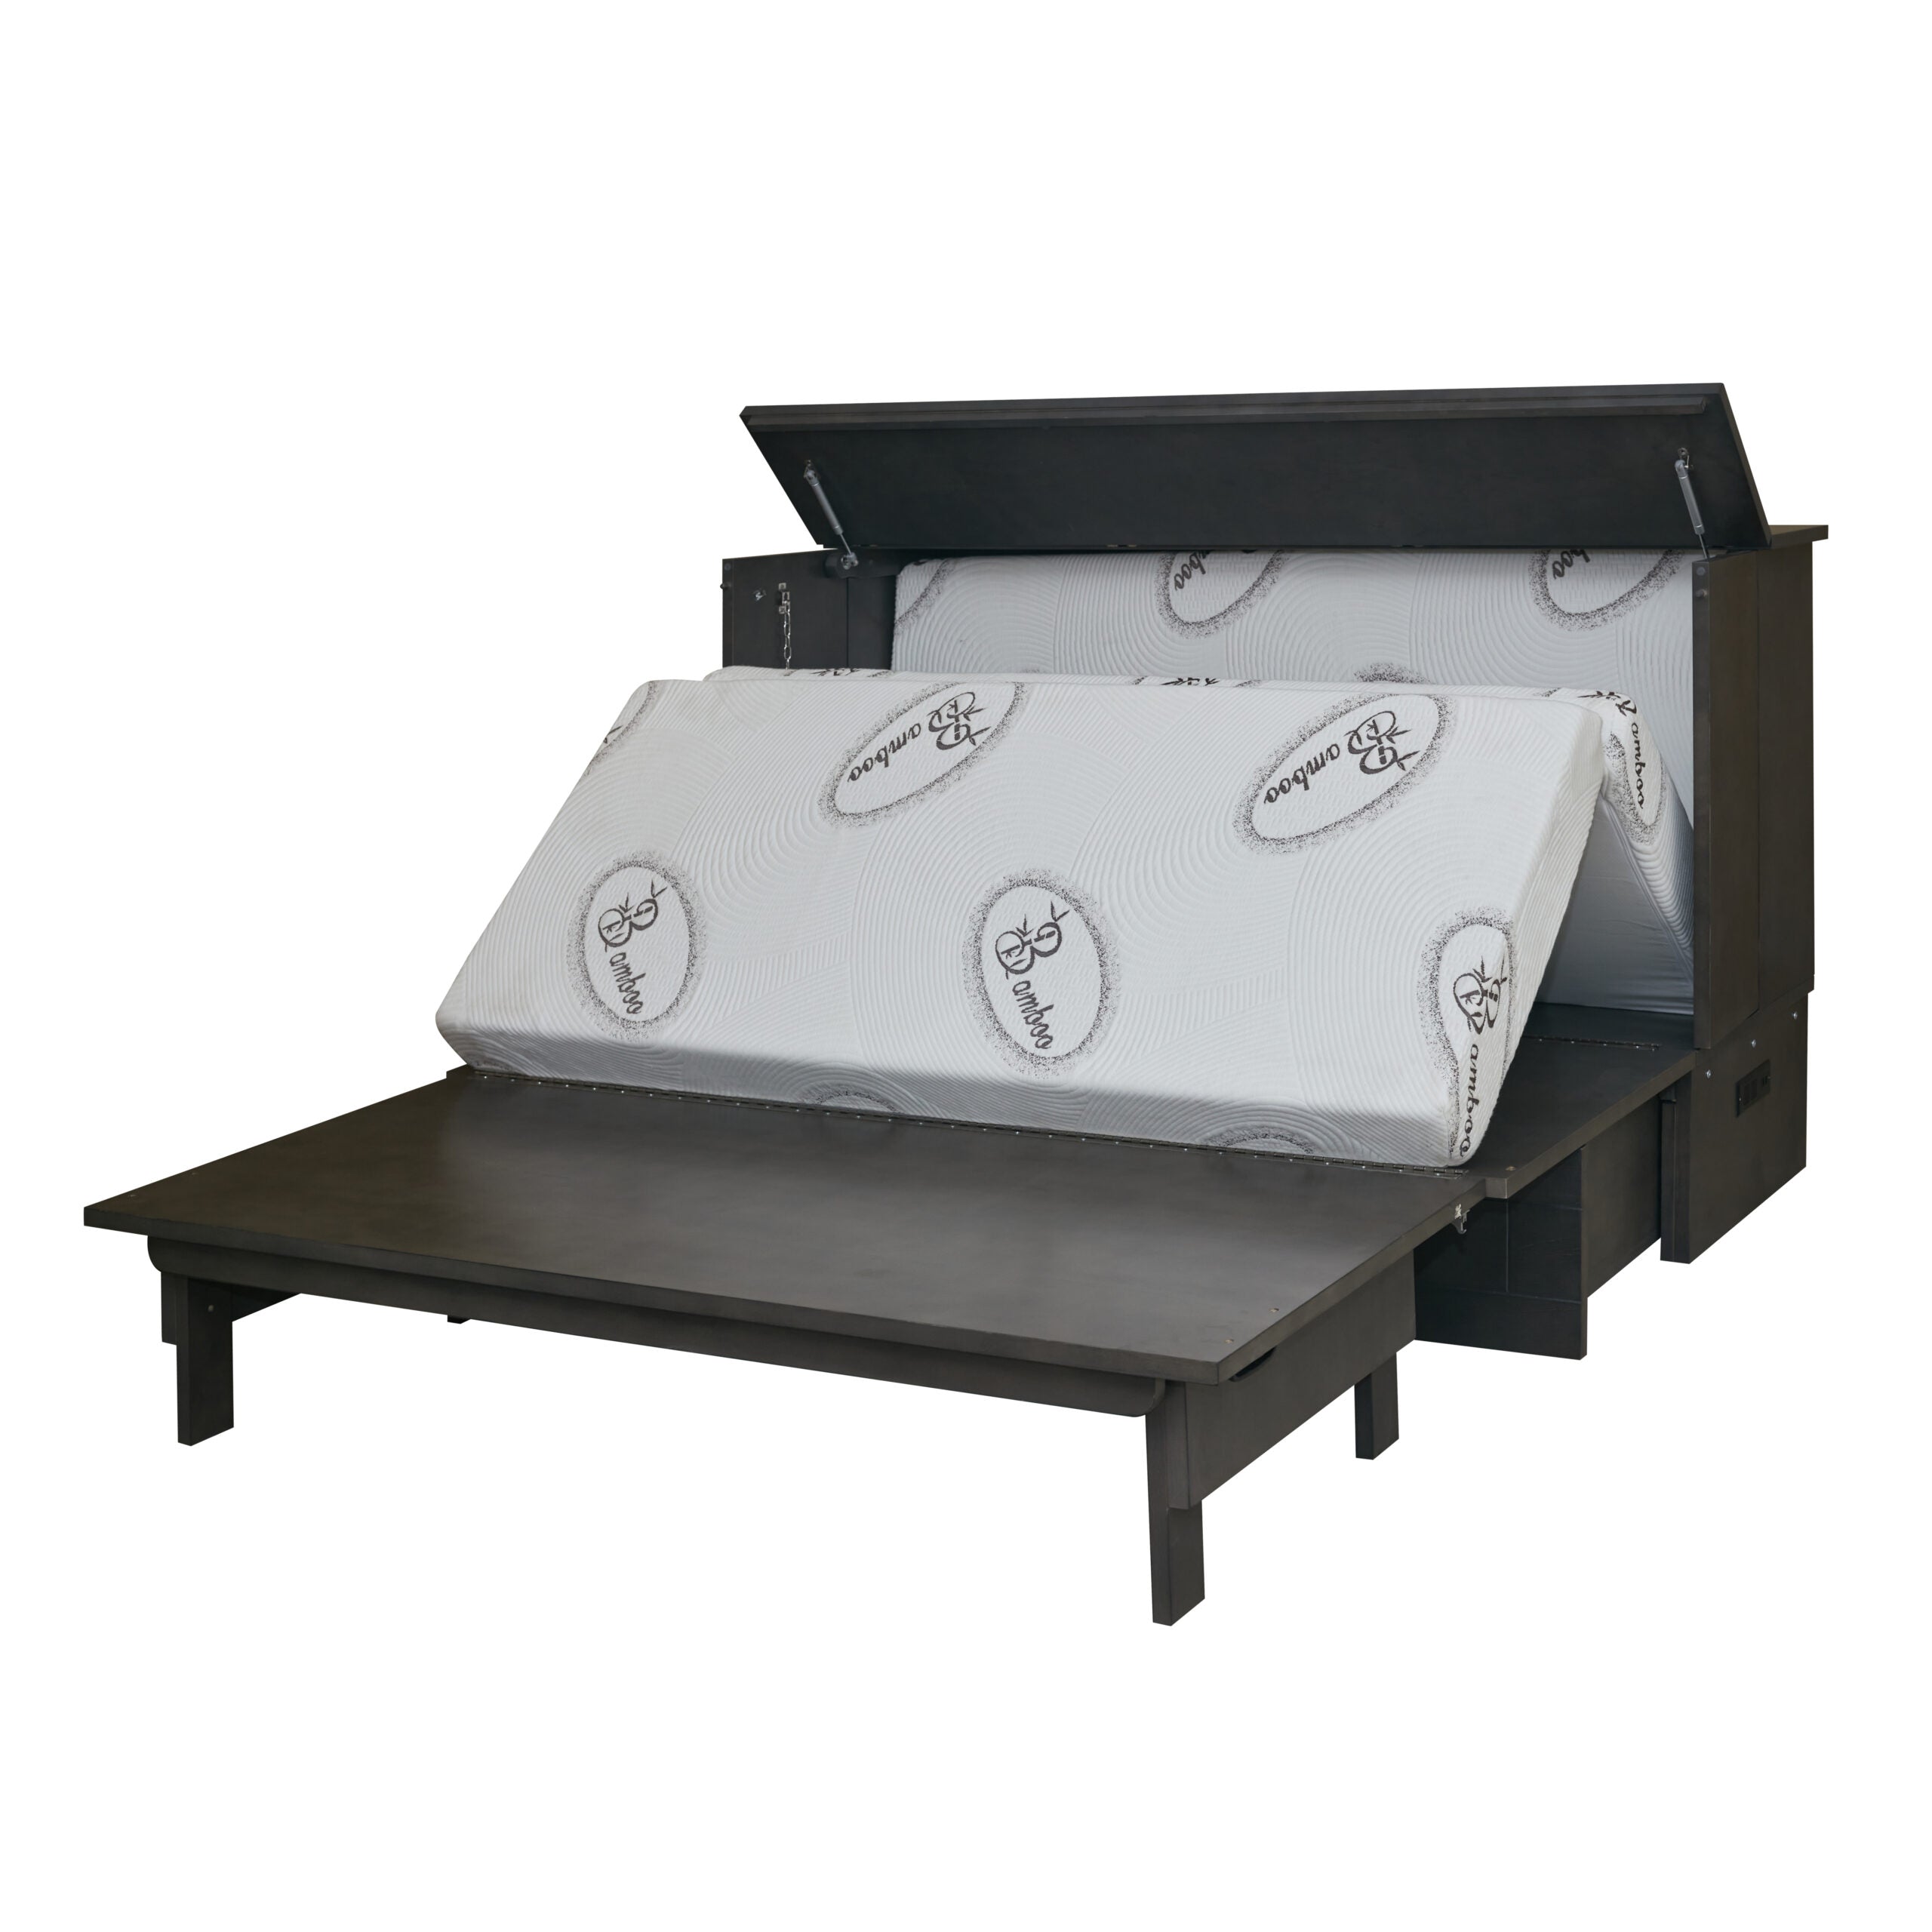 Aztec Cabinet Bed (Floor Model)